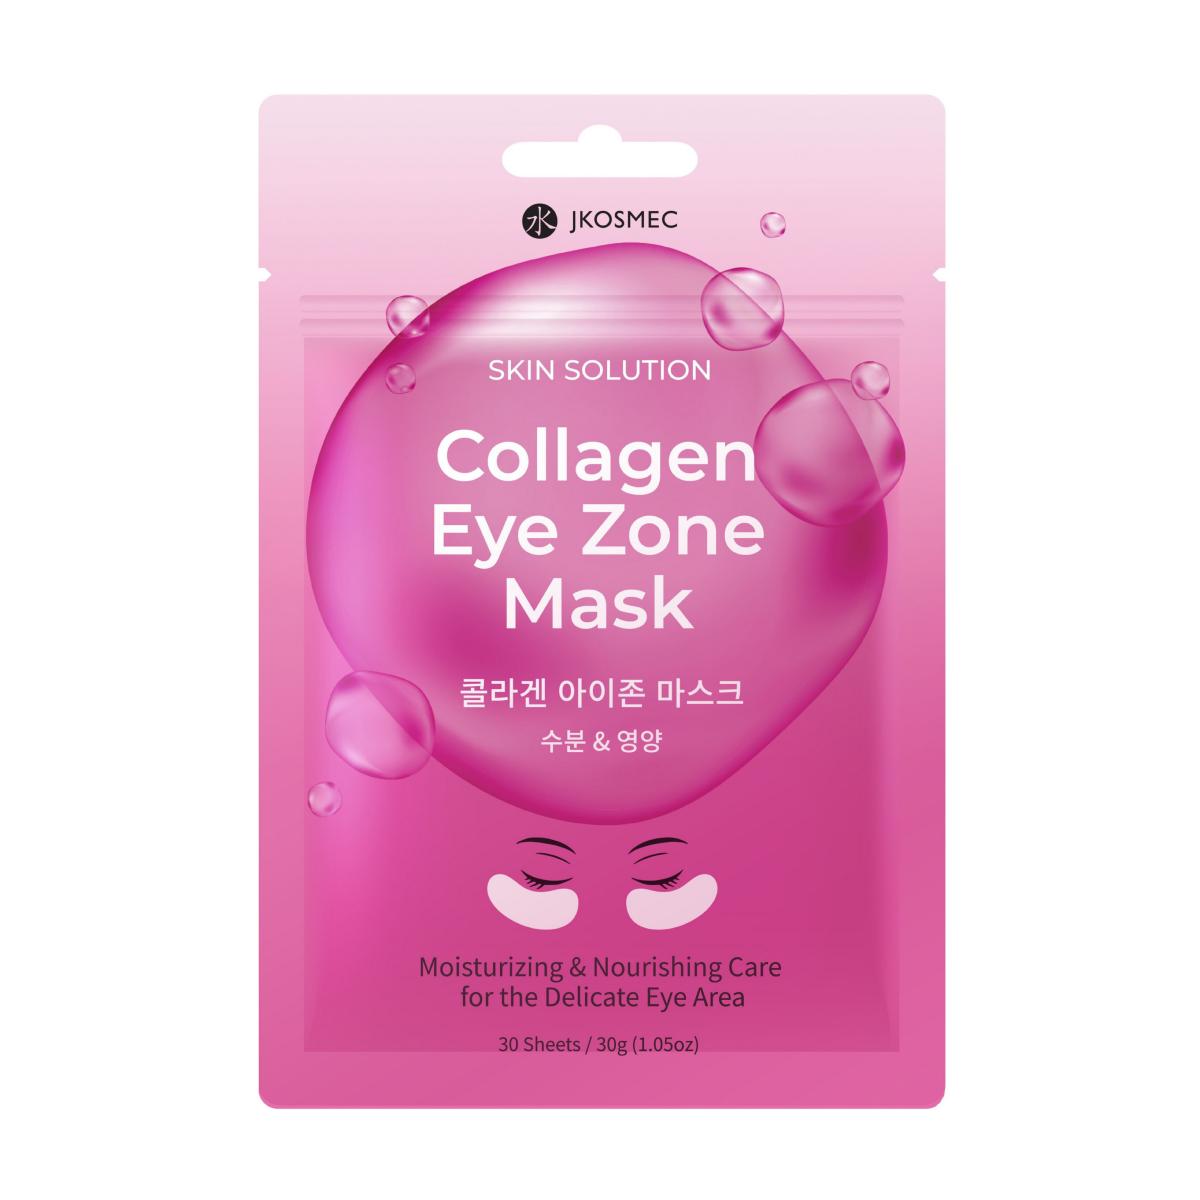 ماسک زیر چشم روشن کننده و آبرسان - JKOSMEC Collagen Eye Zone Mask 30s